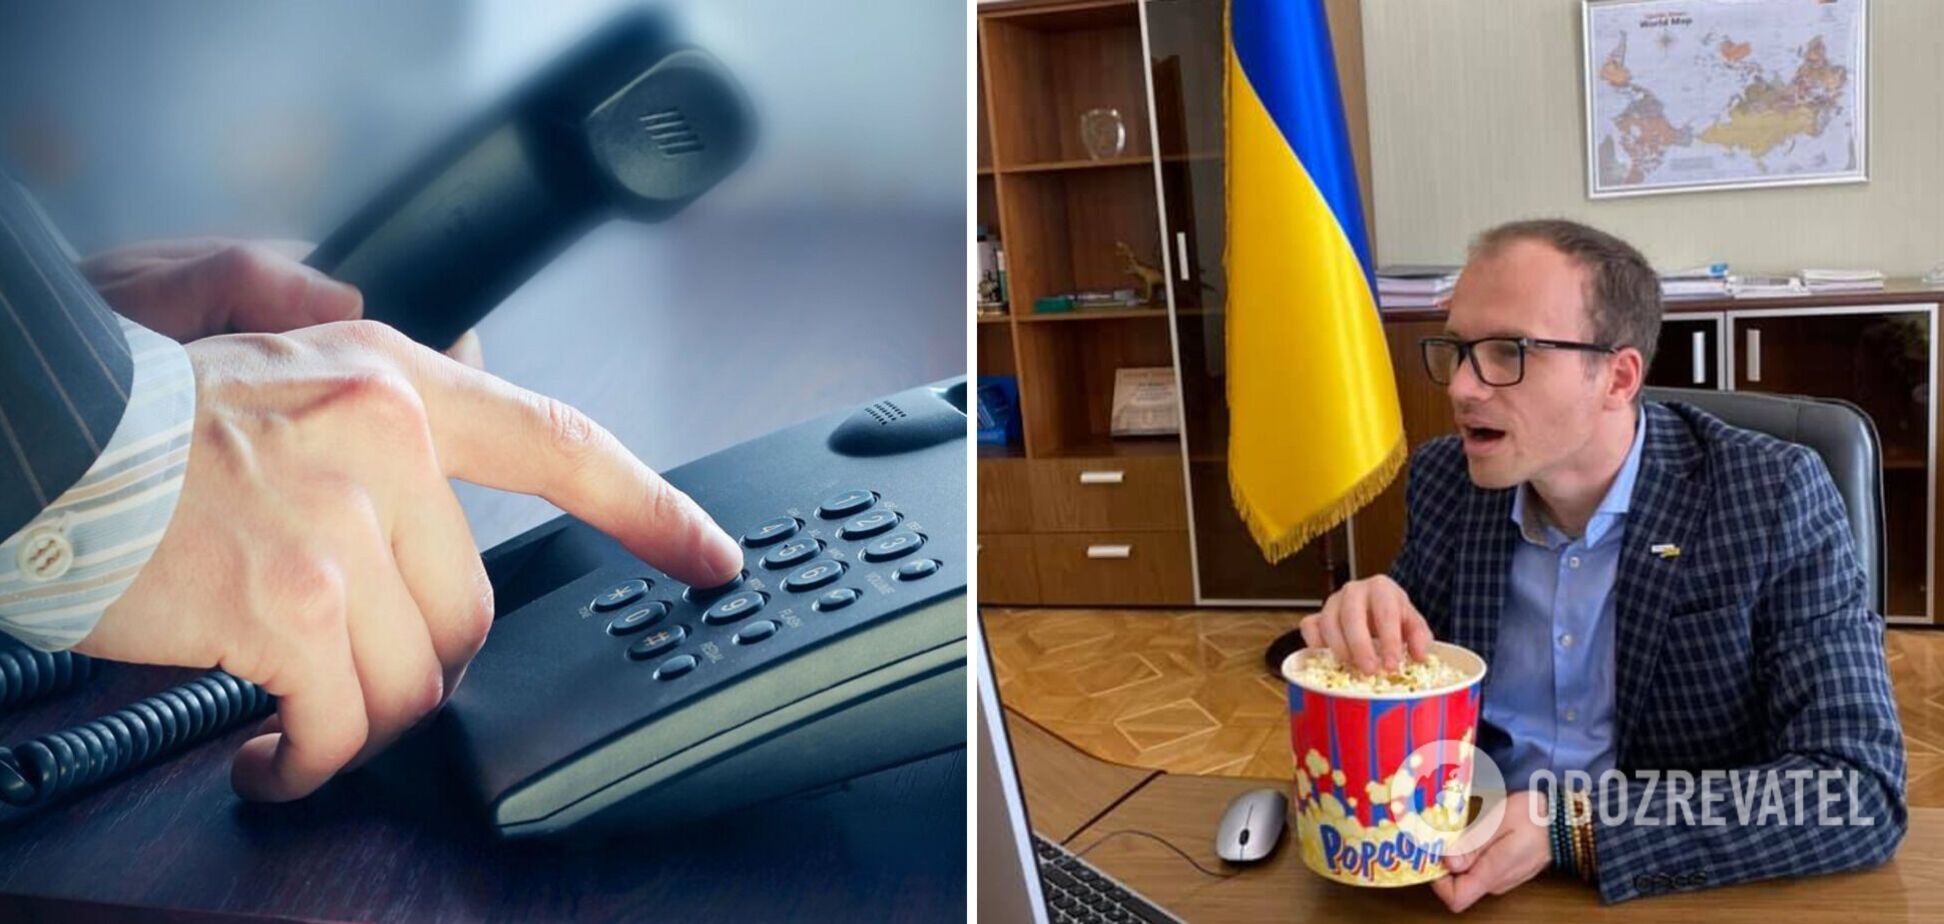 Малюська анонсировал звонки и интернет для заключенных в СИЗО в Украине: услуга будет платной